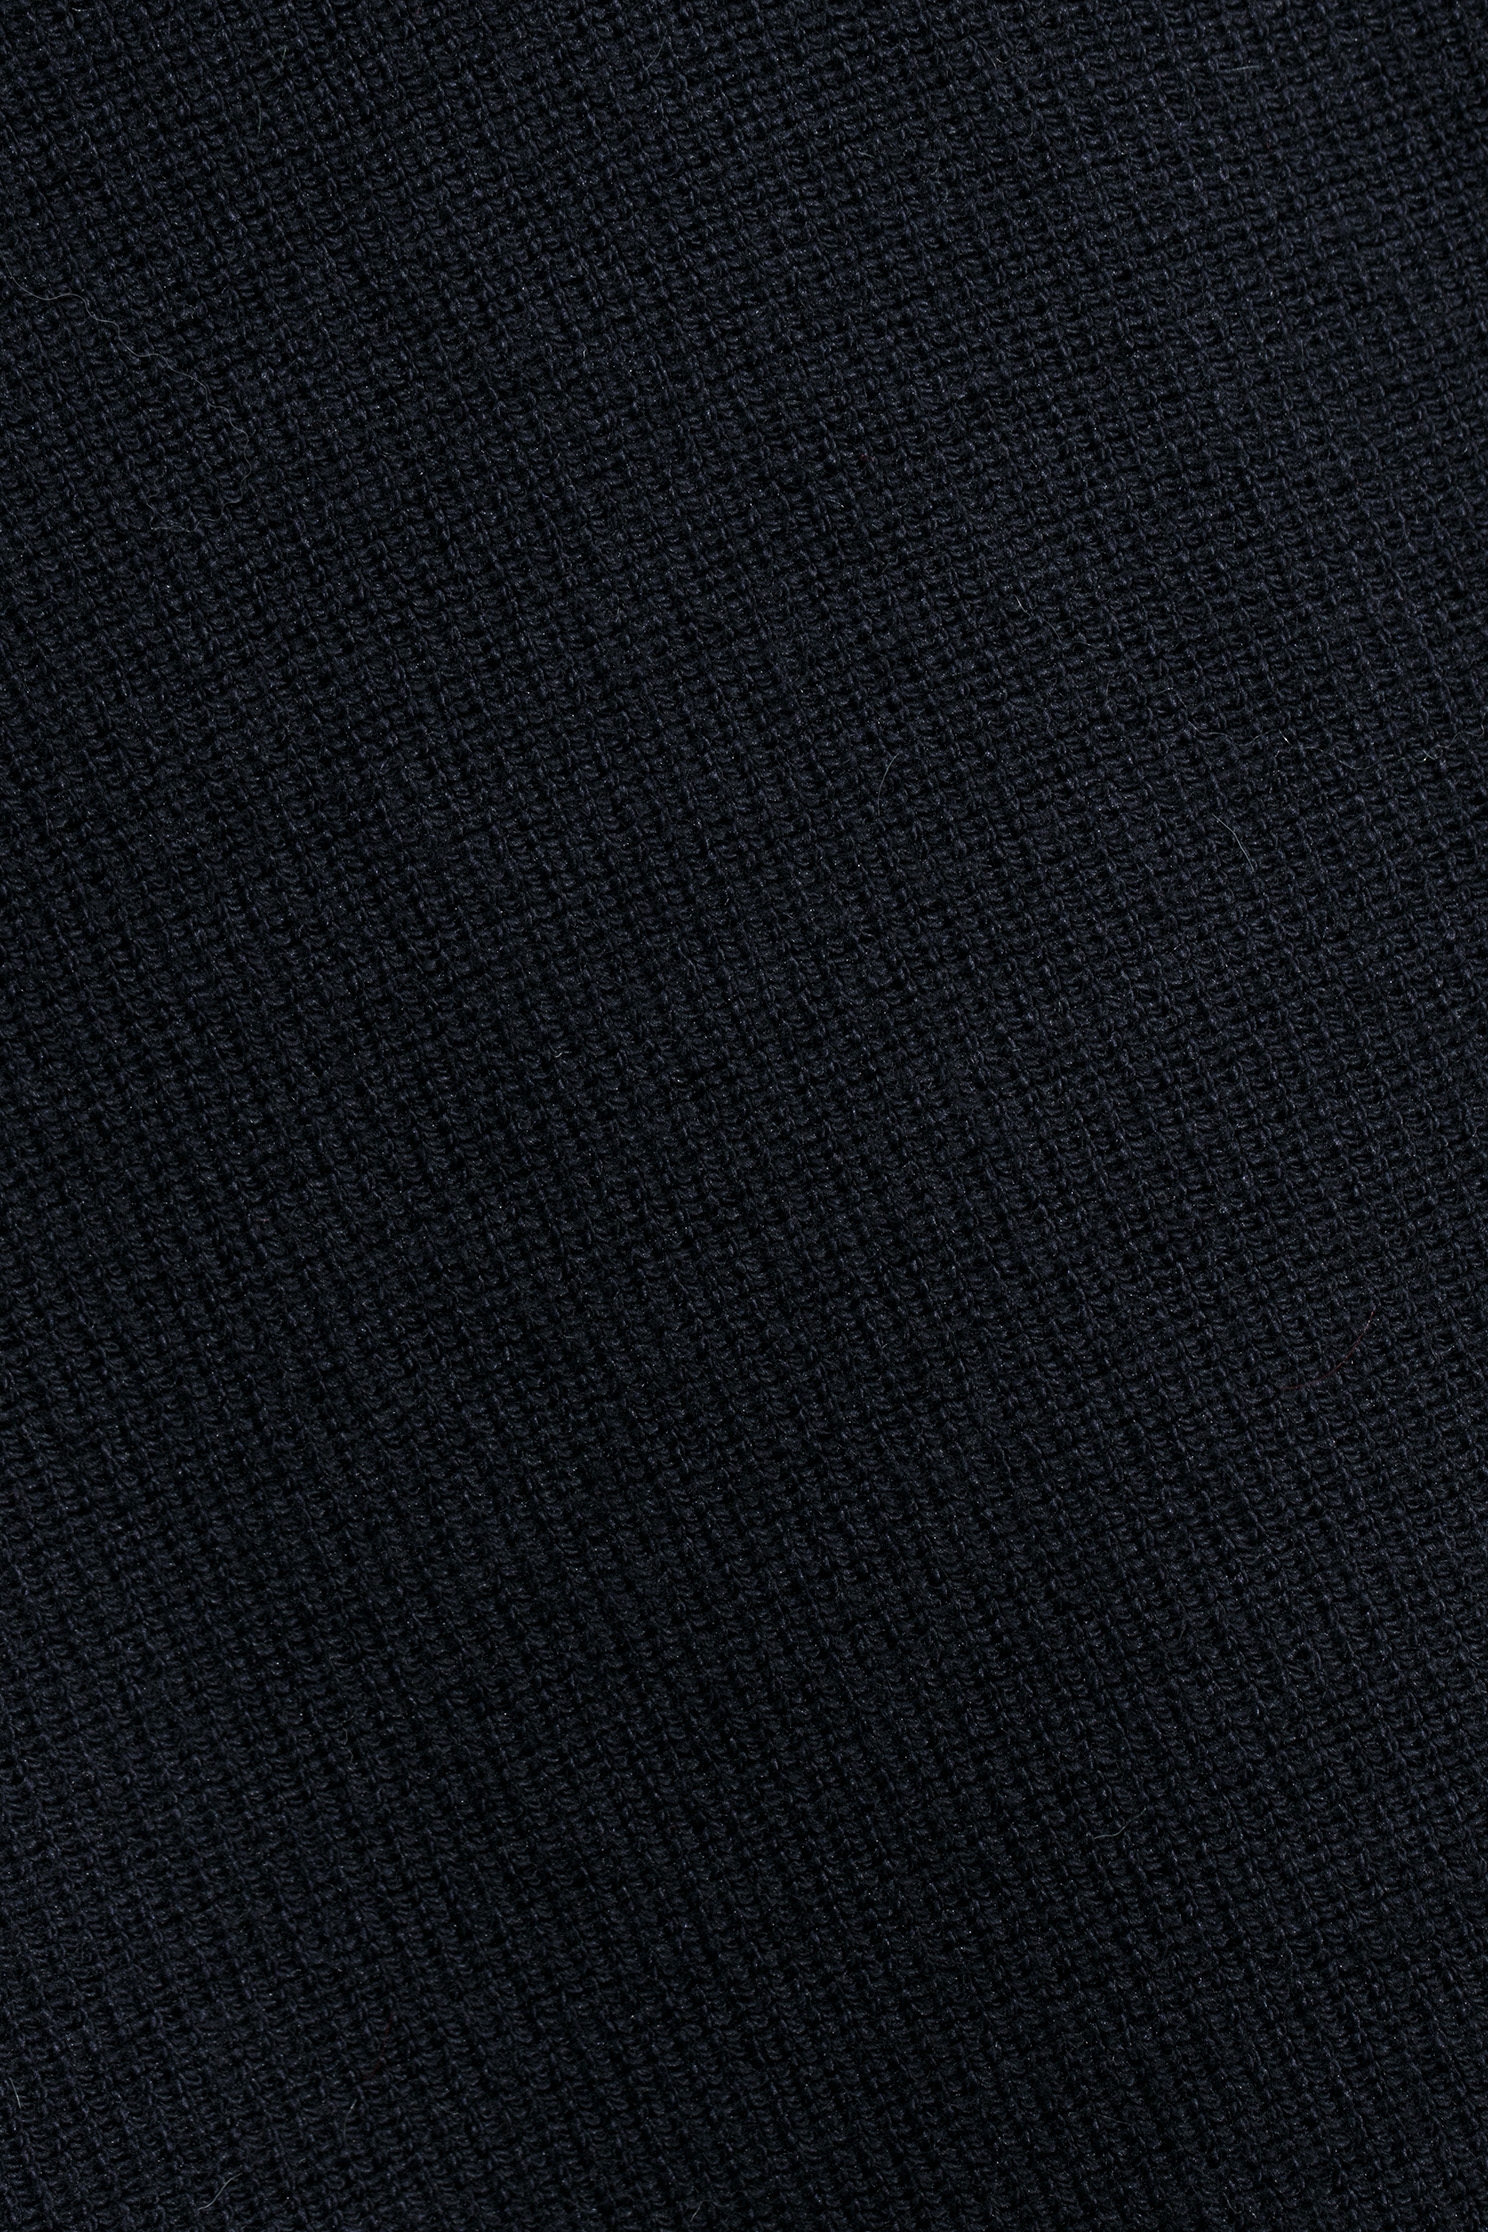 大洋藍活片兩件式針織上衣大洋藍活片兩件式針織上衣,上衣,春夏穿搭,襯衫,針織,針織上衣,針織衫